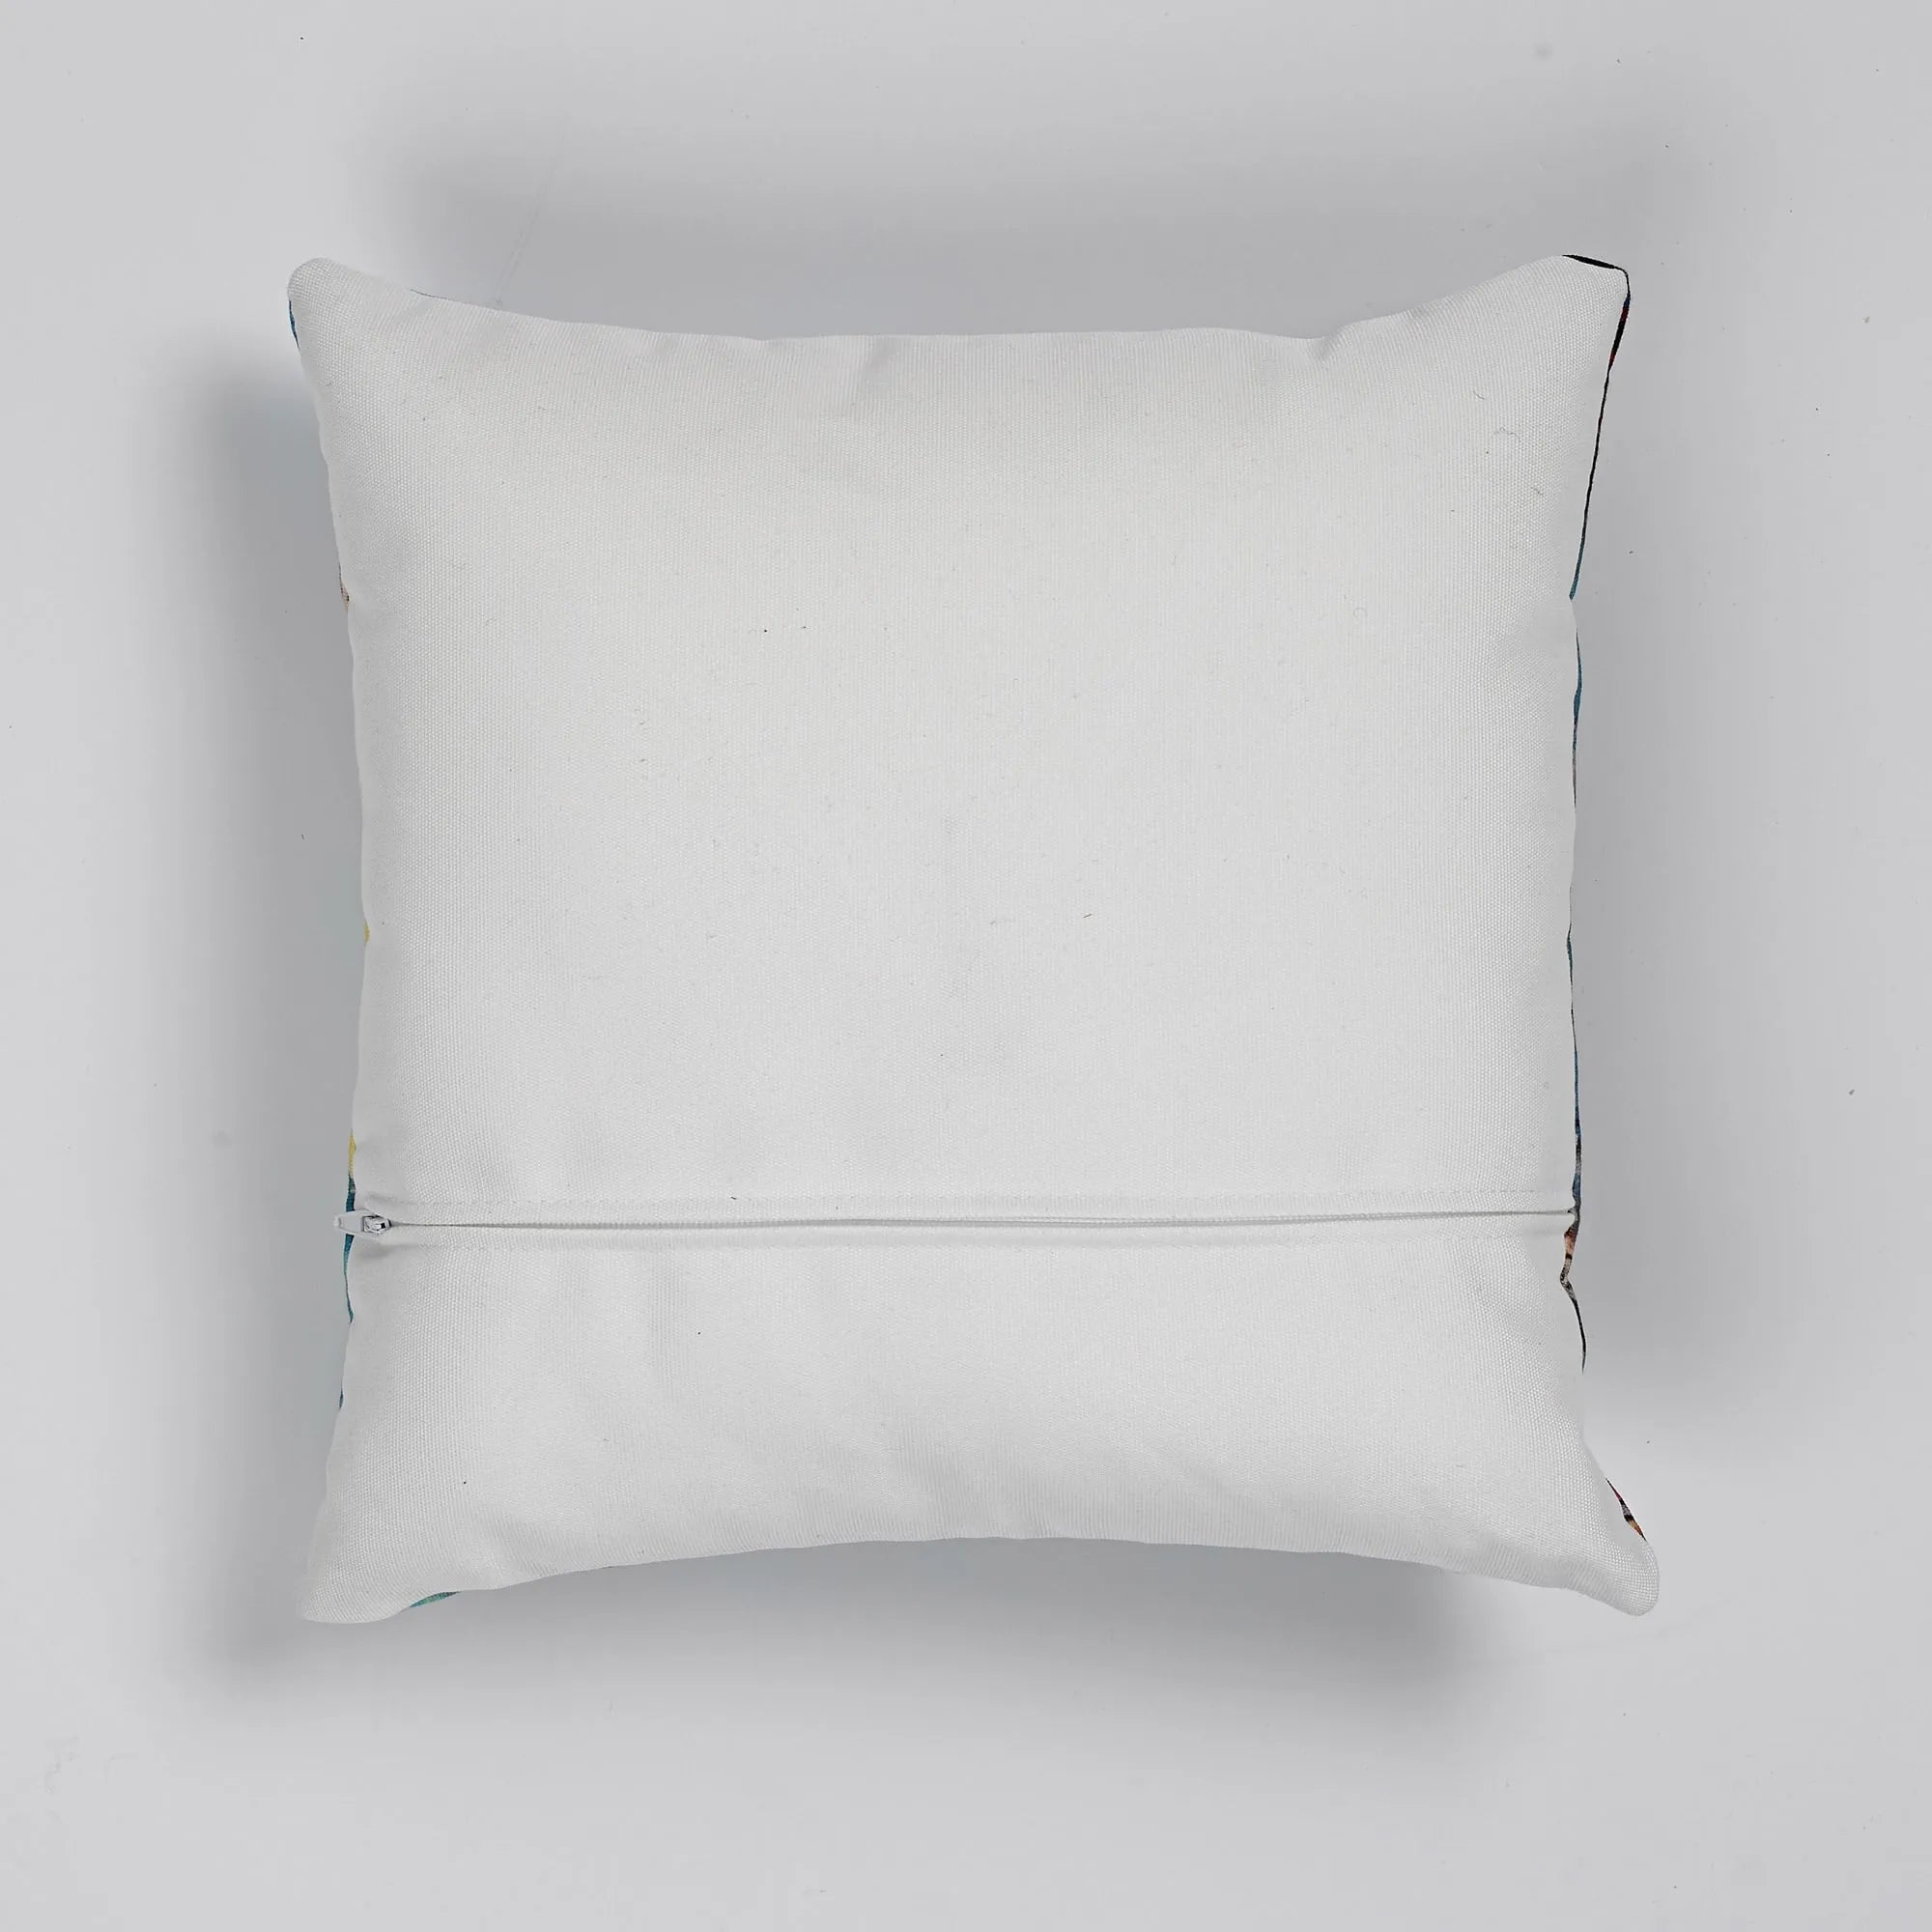 Flying High Cushion - Throw Pillows - Aesthetic Art